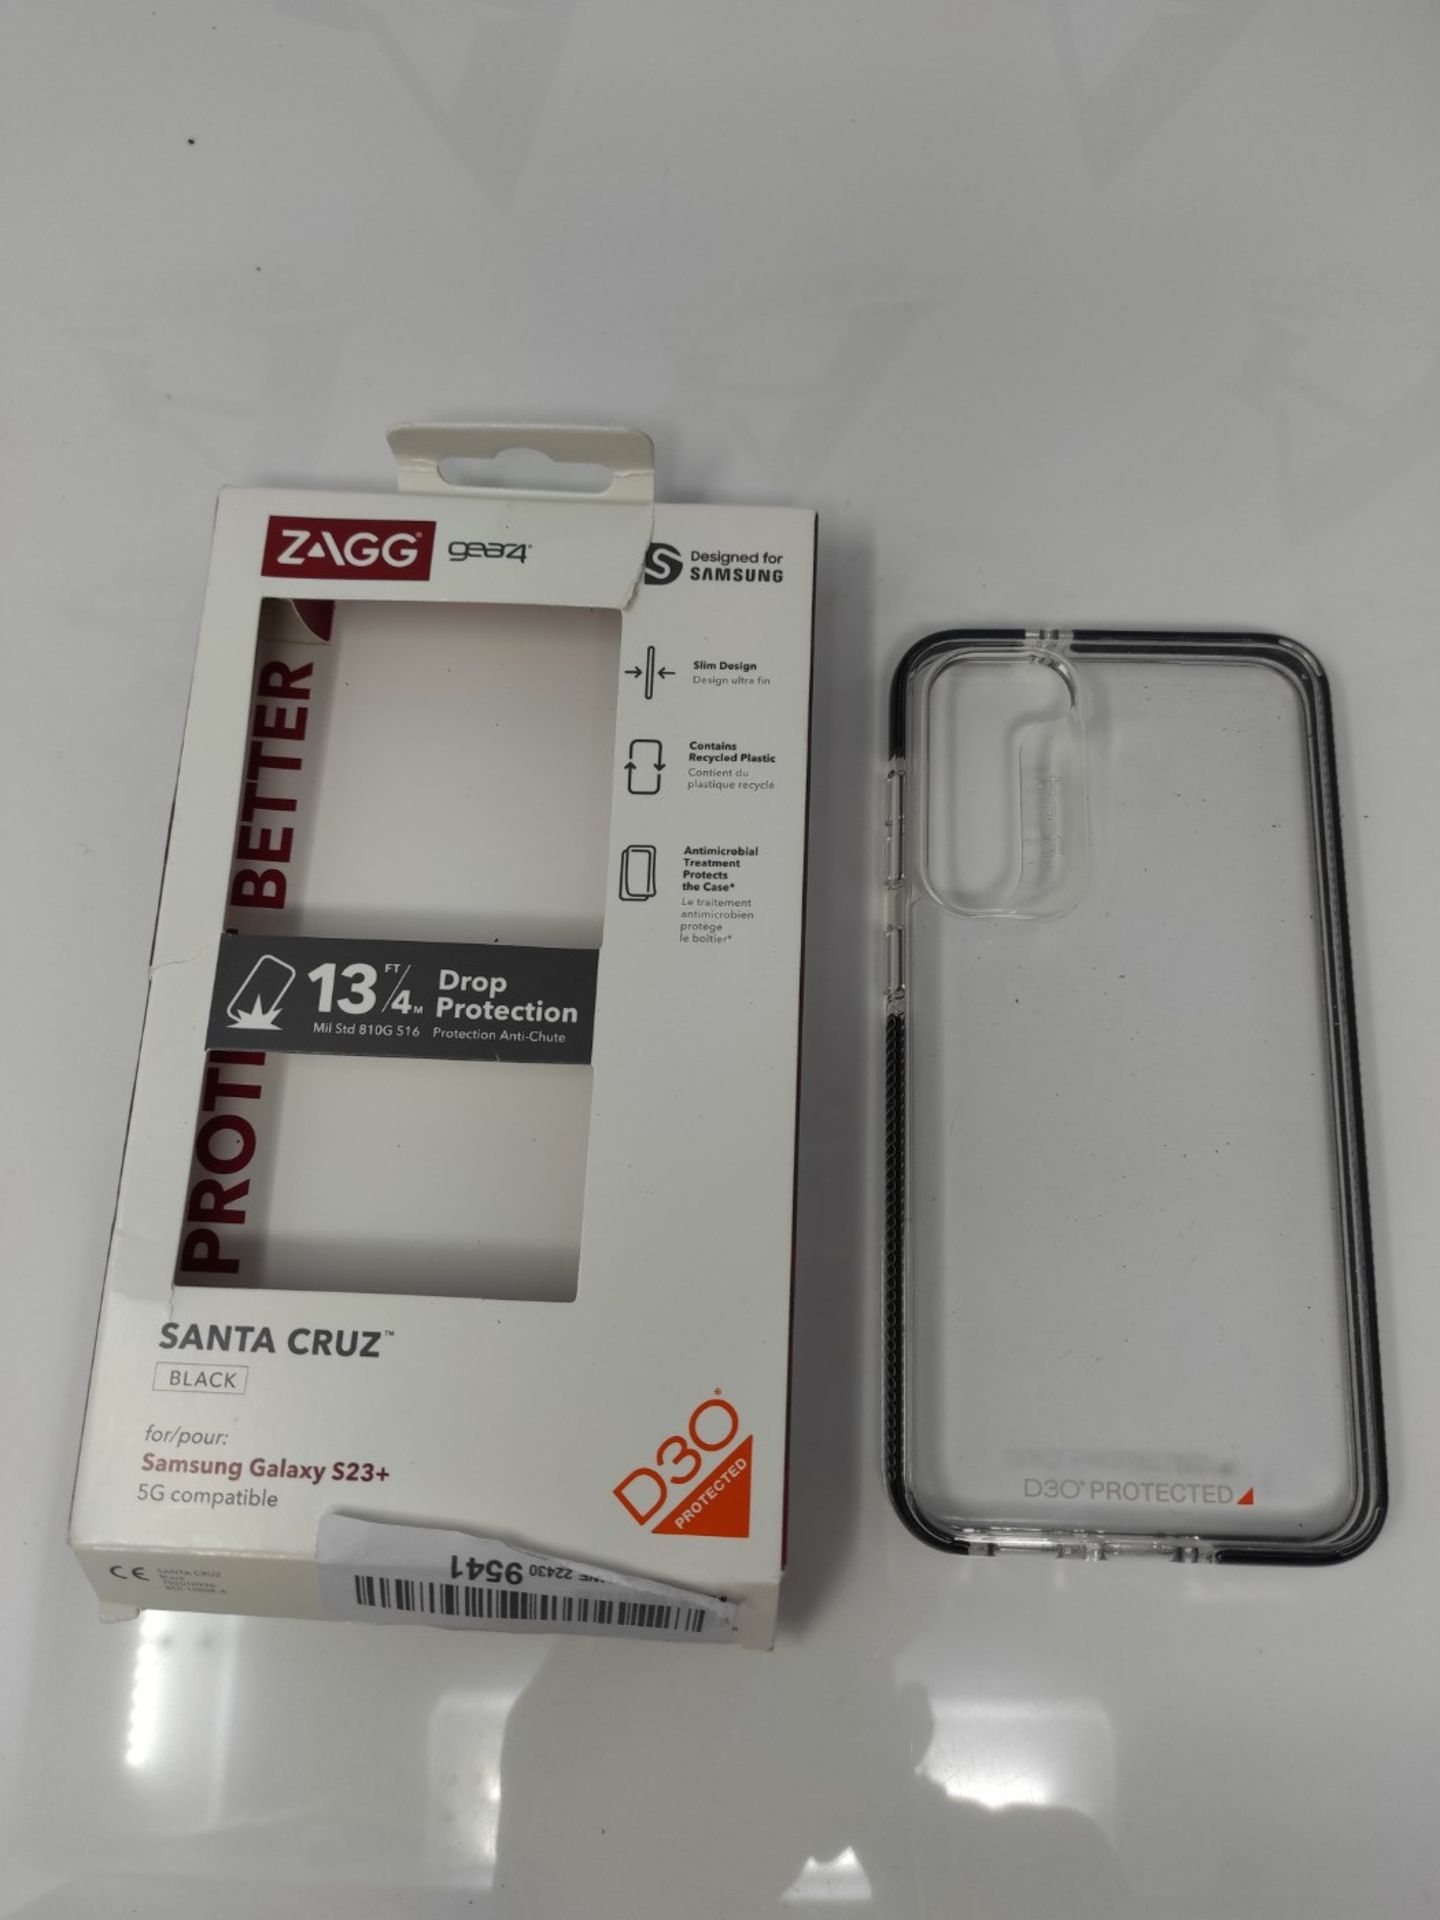 ZAGG Gear4 Santa Cruz D30 Protective Case for Samsung Galaxy S23,+, 6.6in, Slim, Impro - Image 2 of 2